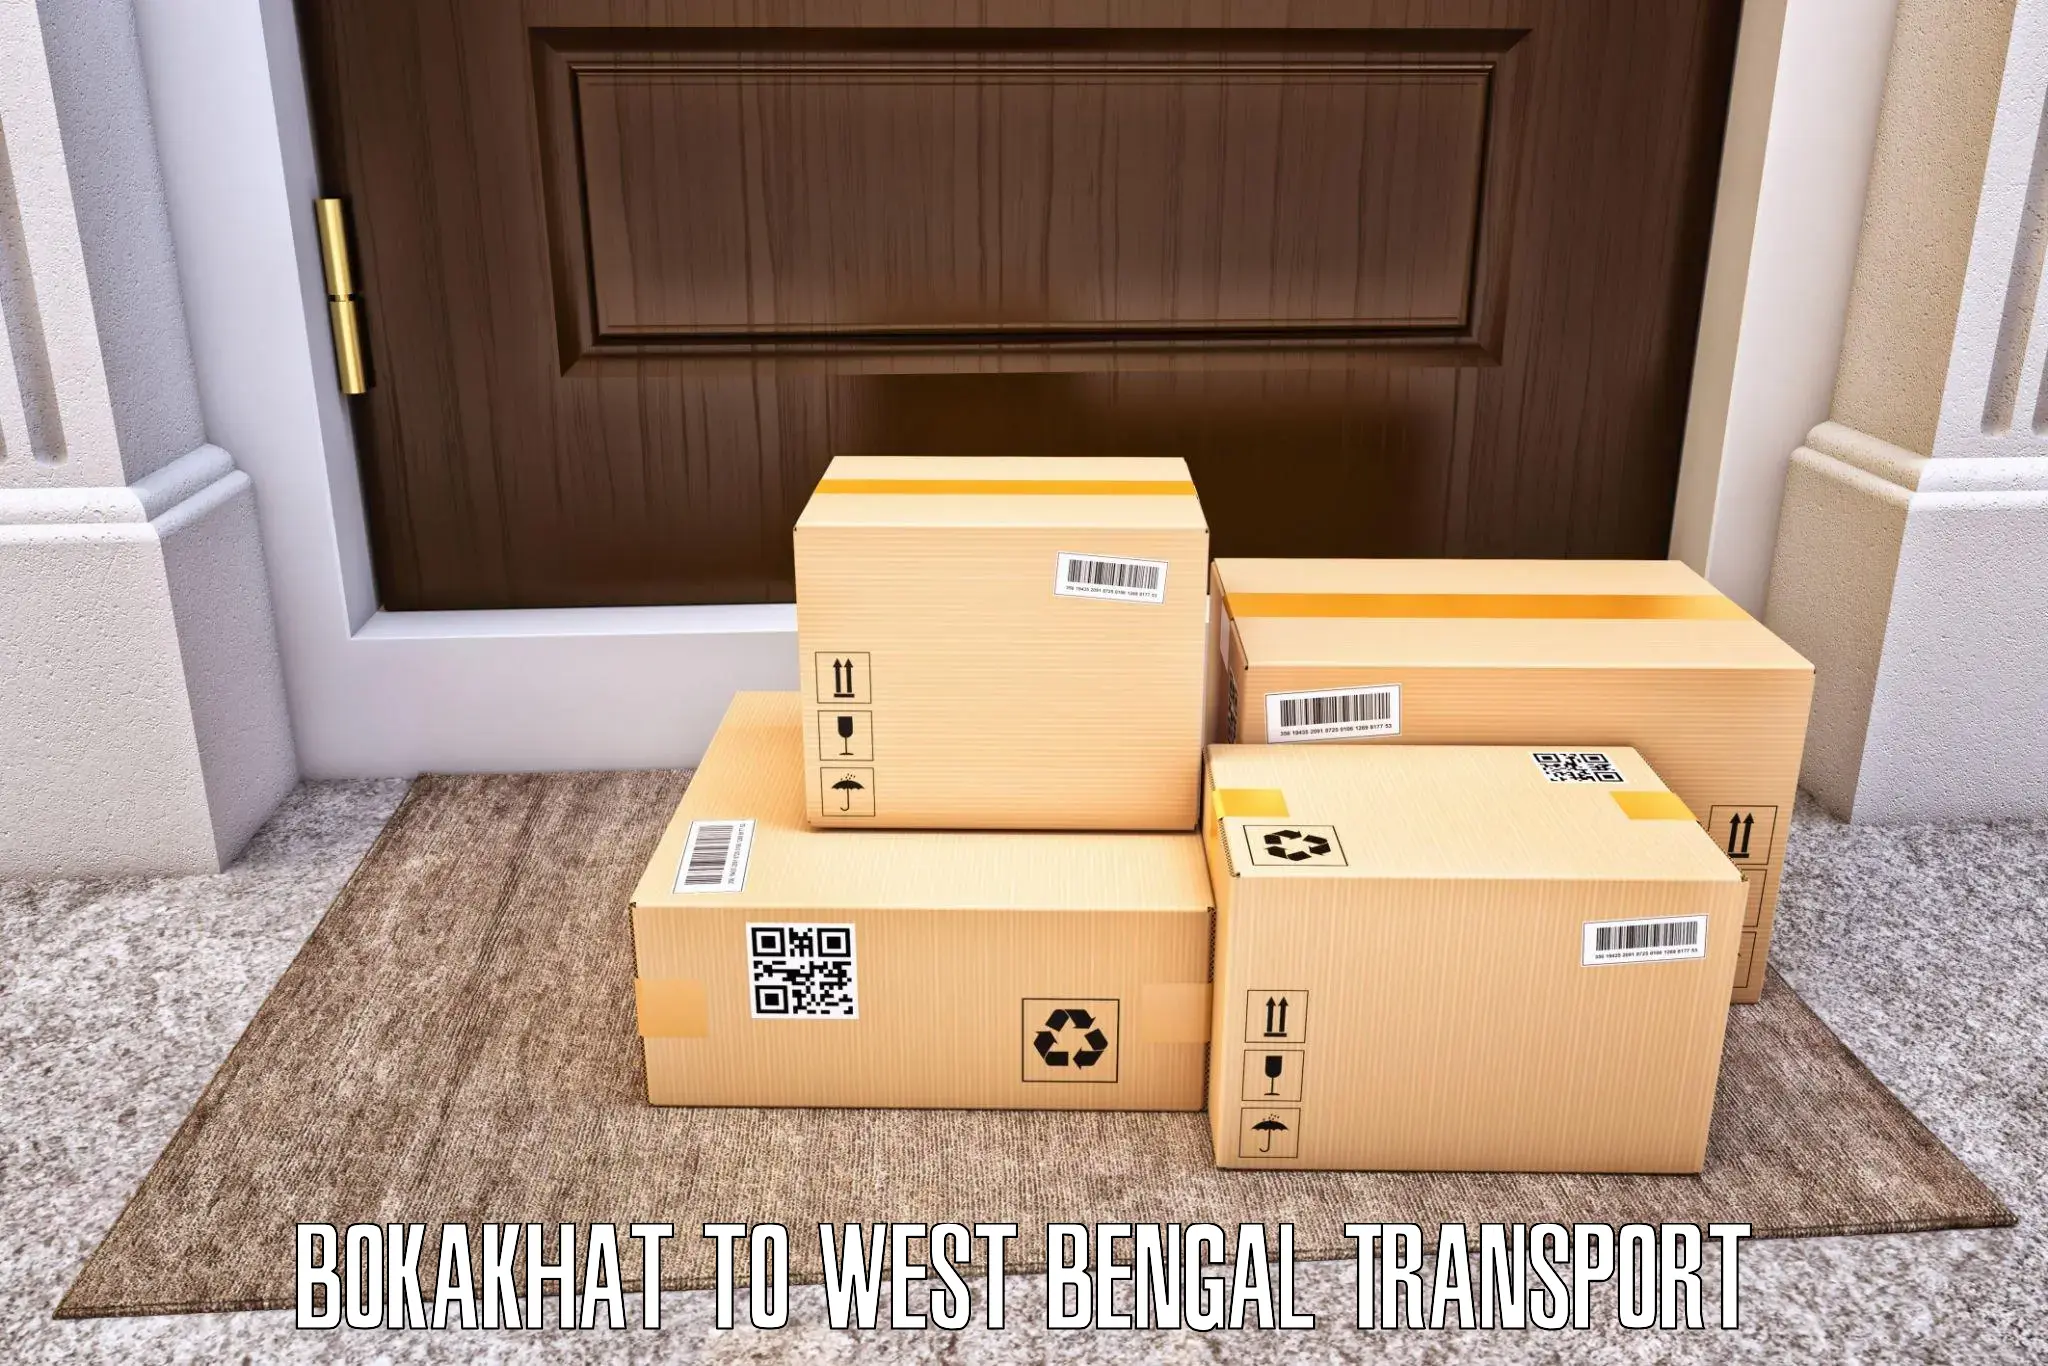 Pick up transport service Bokakhat to Ghatal